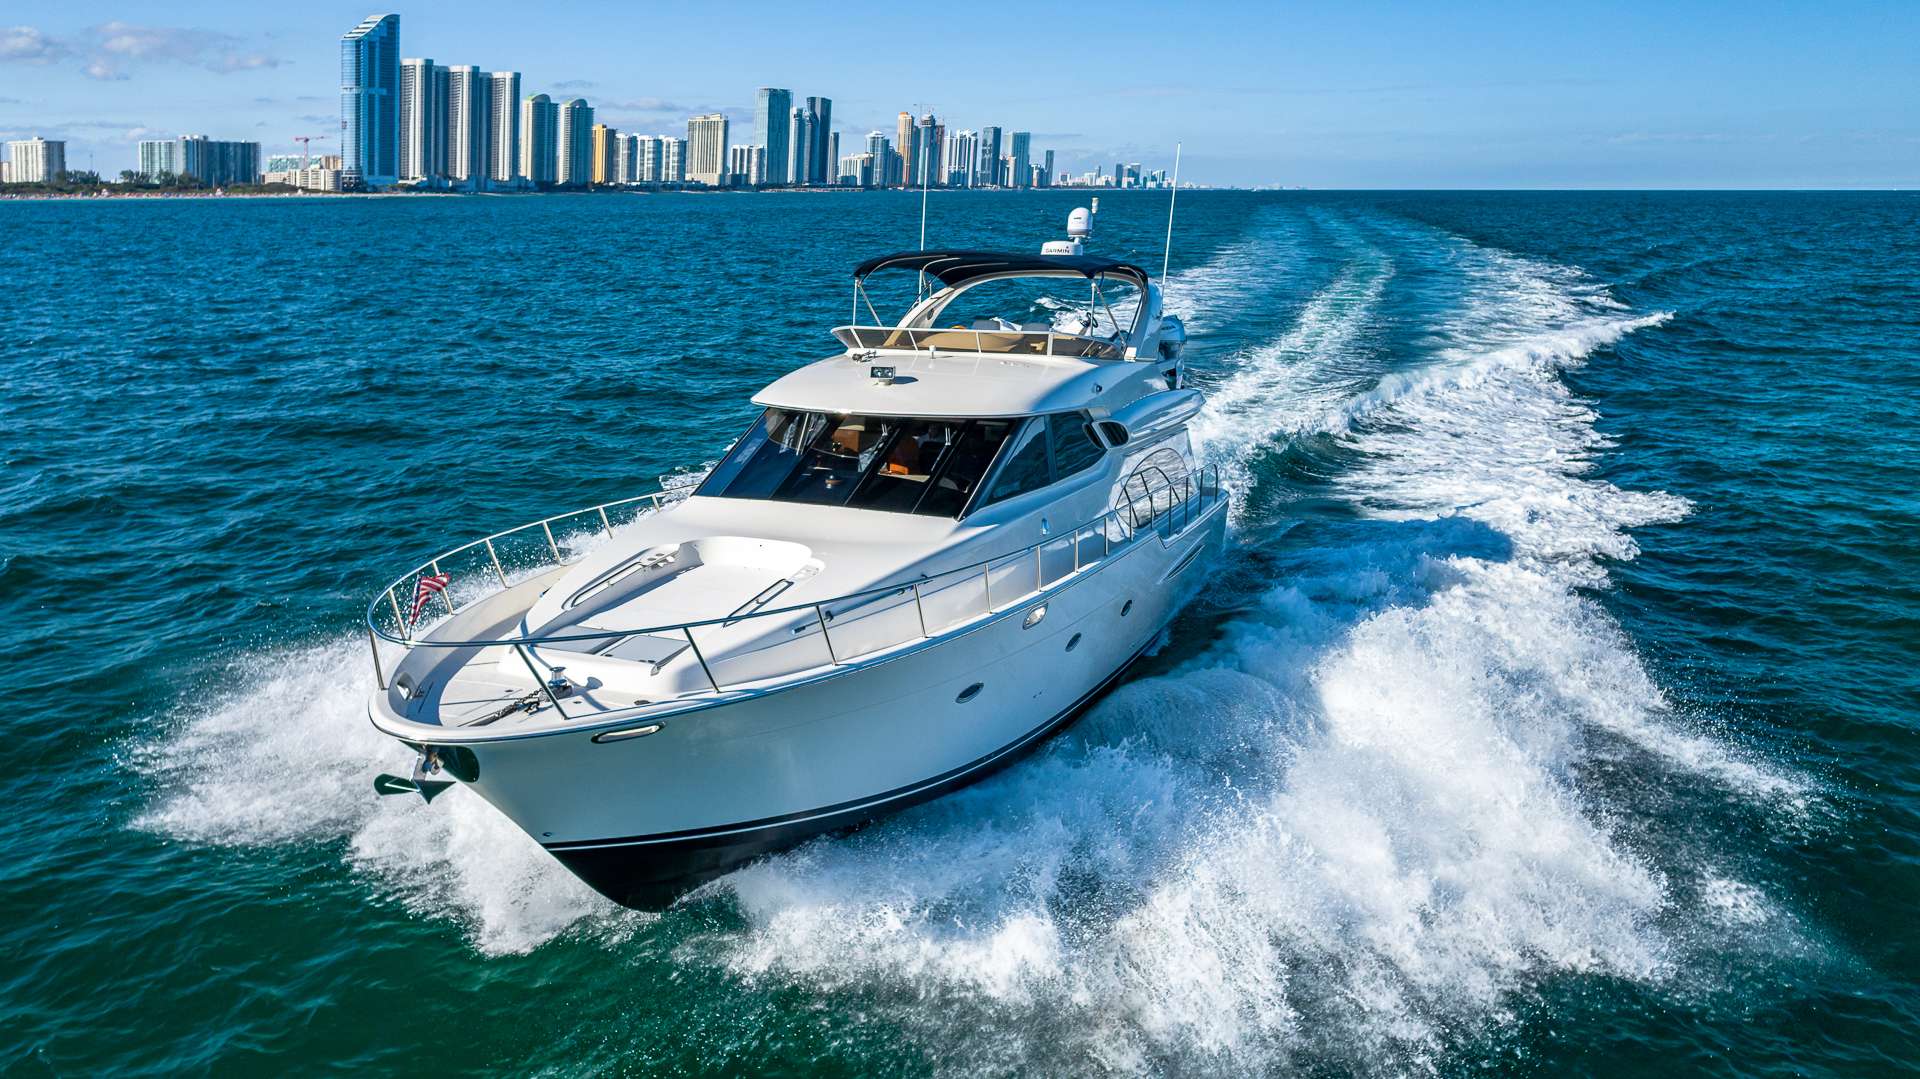 ELEGANT LADY - Yacht Charter Key West & Boat hire in Florida & Bahamas 1